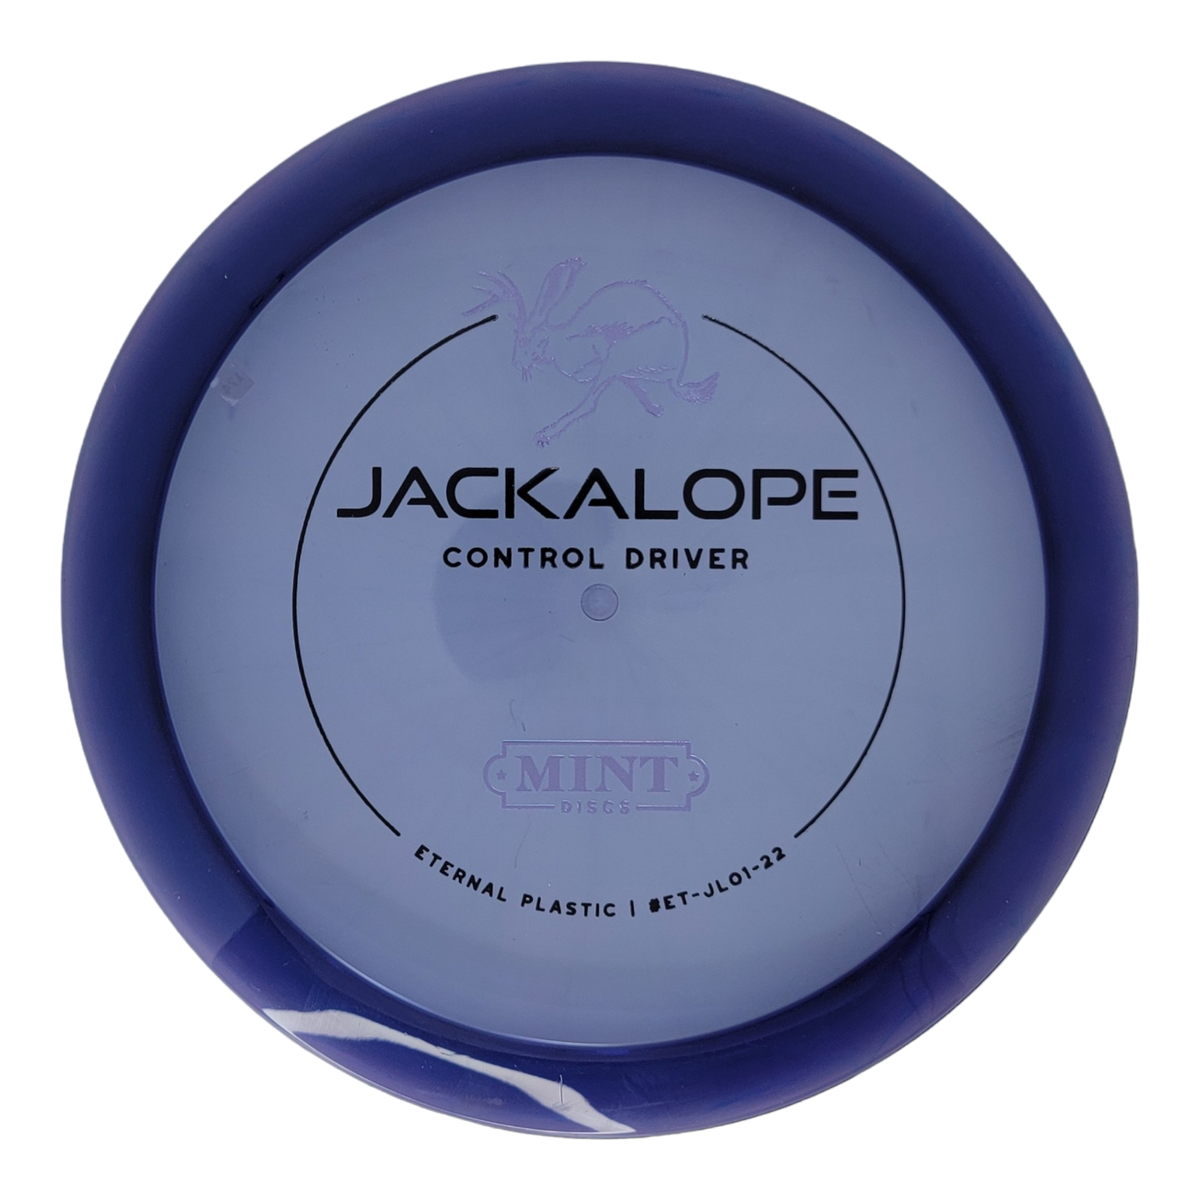 Mint Discs Eternal Jackalope